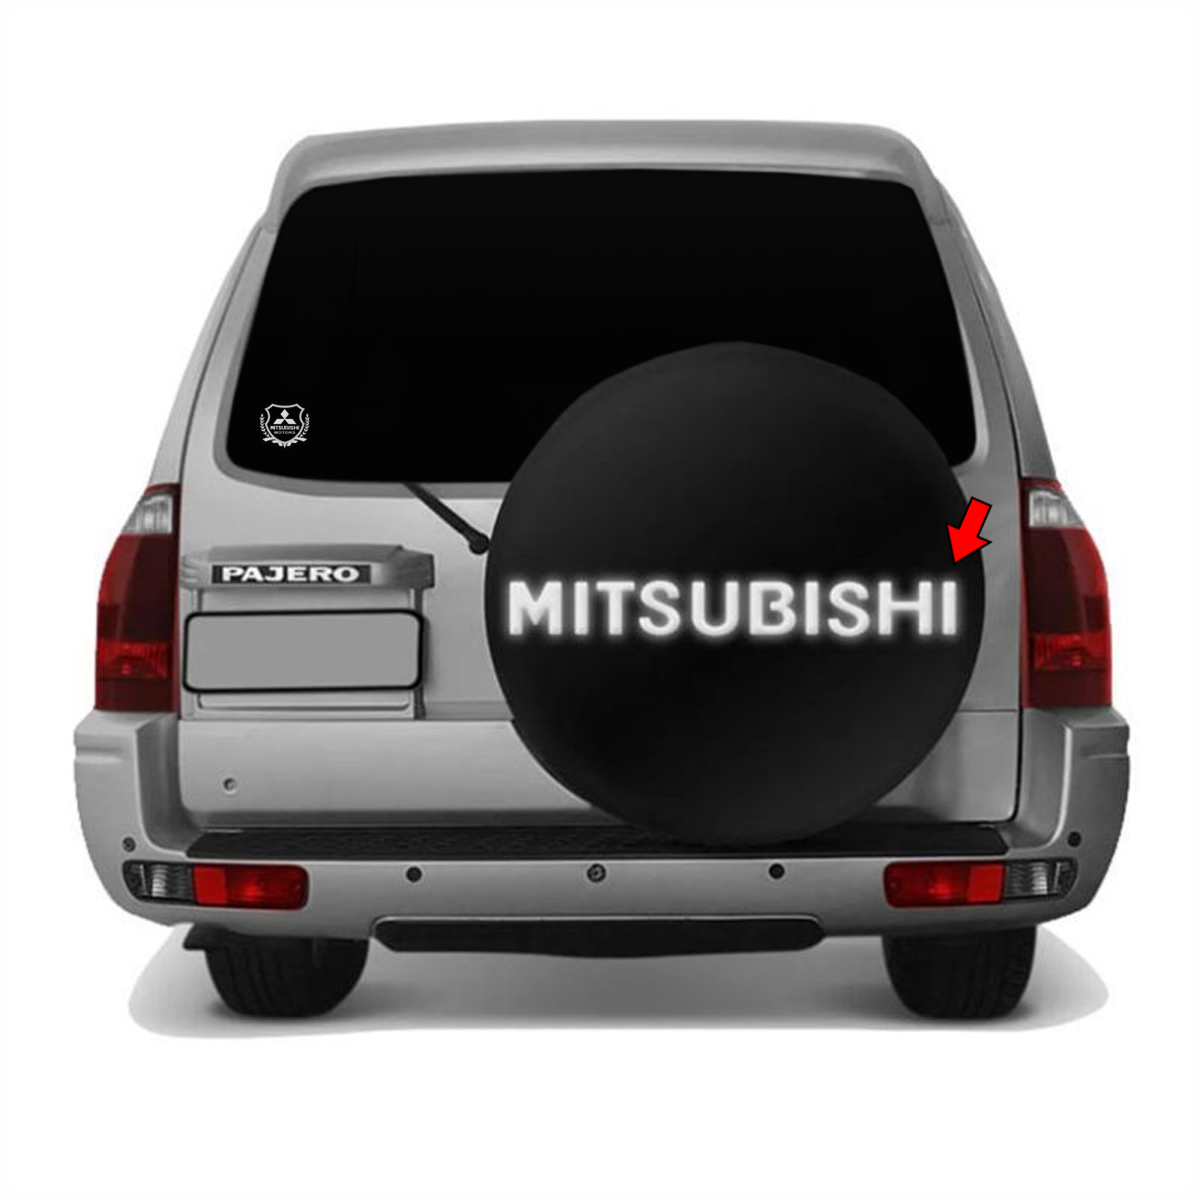 Adesivo Mitsubishi Resinado Pajero TR4 Prata Refletivo